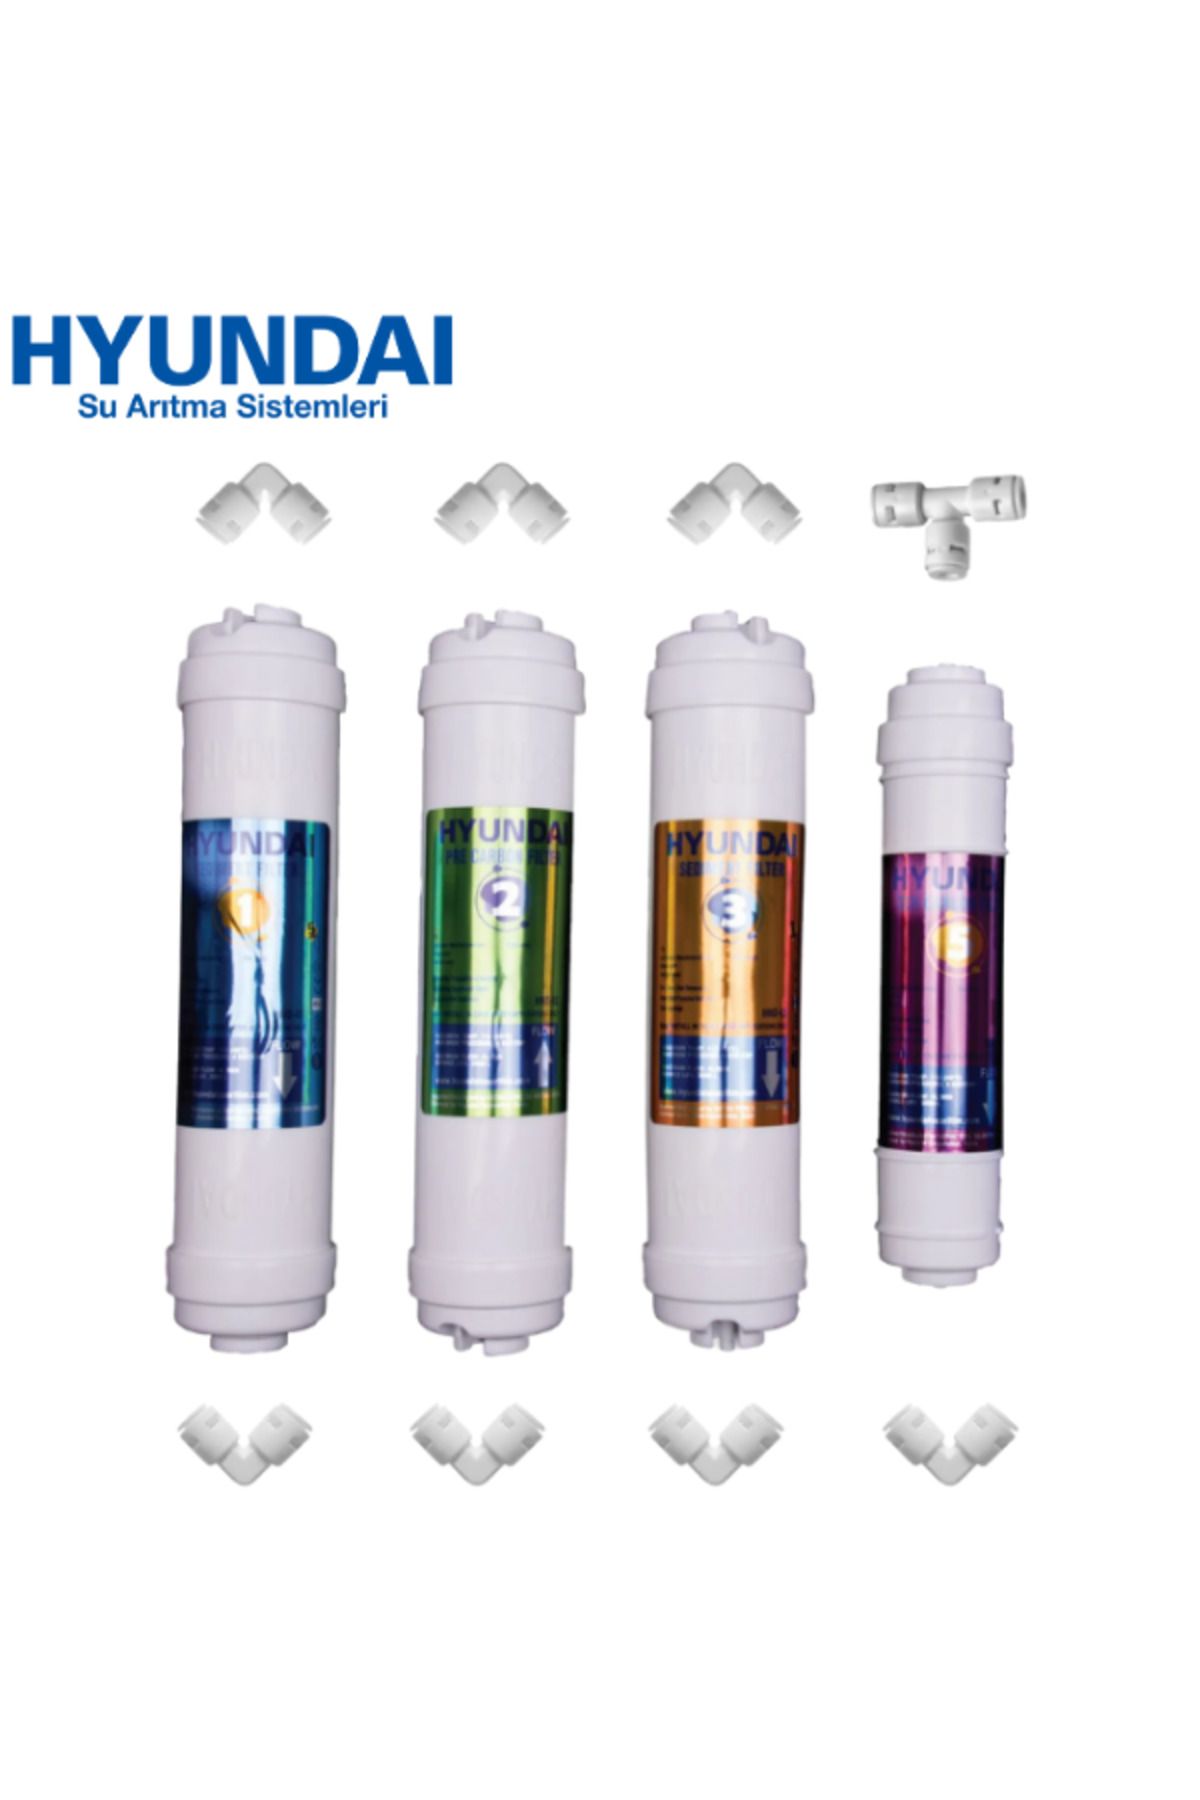 Hyundai Su Arıtma Filtre Seti 4'lü Takım ve Bağlantı Parçaları- Nsf Onaylı - Orijinal